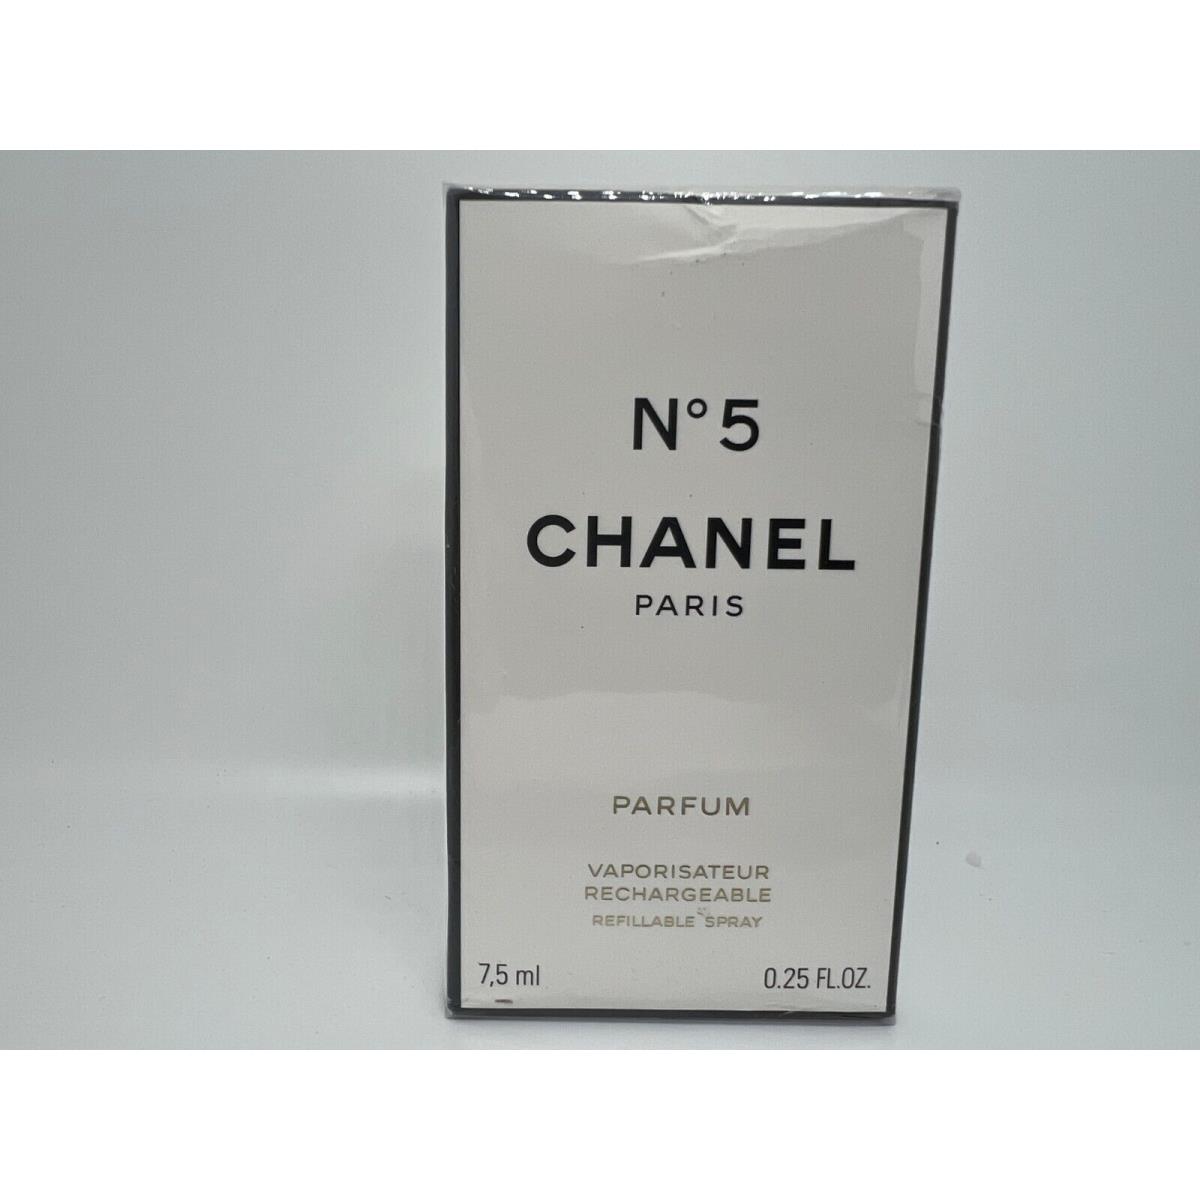 Chanel N.5 by Chanel 0.25 FL oz / 7.5 ML Parfum Refillable Spray In Box